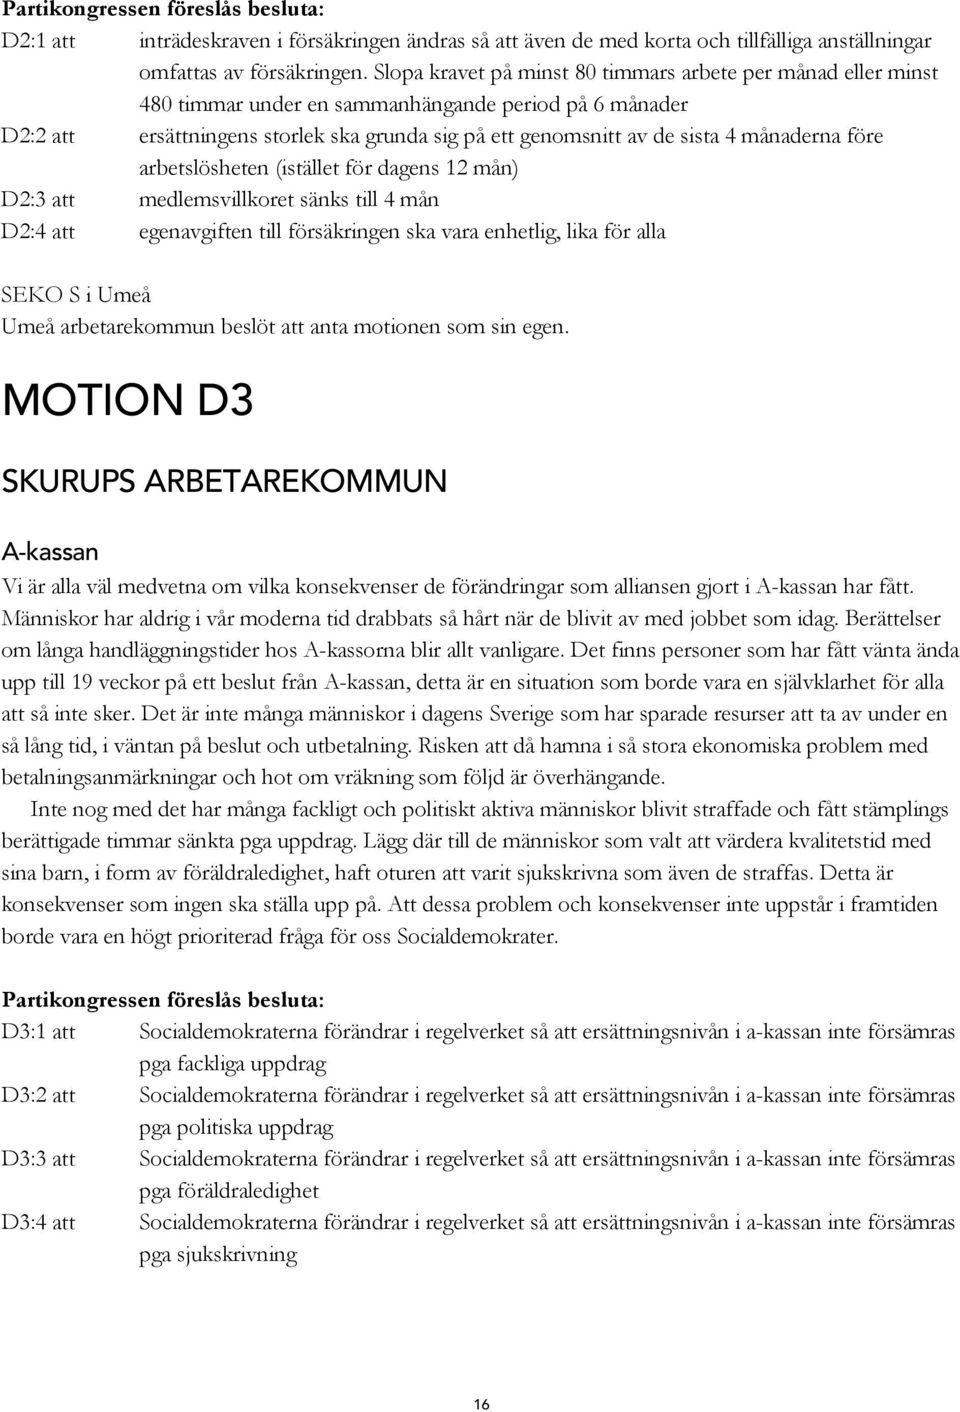 månaderna före arbetslösheten (istället för dagens 12 mån) D2:3 att medlemsvillkoret sänks till 4 mån D2:4 att egenavgiften till försäkringen ska vara enhetlig, lika för alla SEKO S i Umeå Umeå